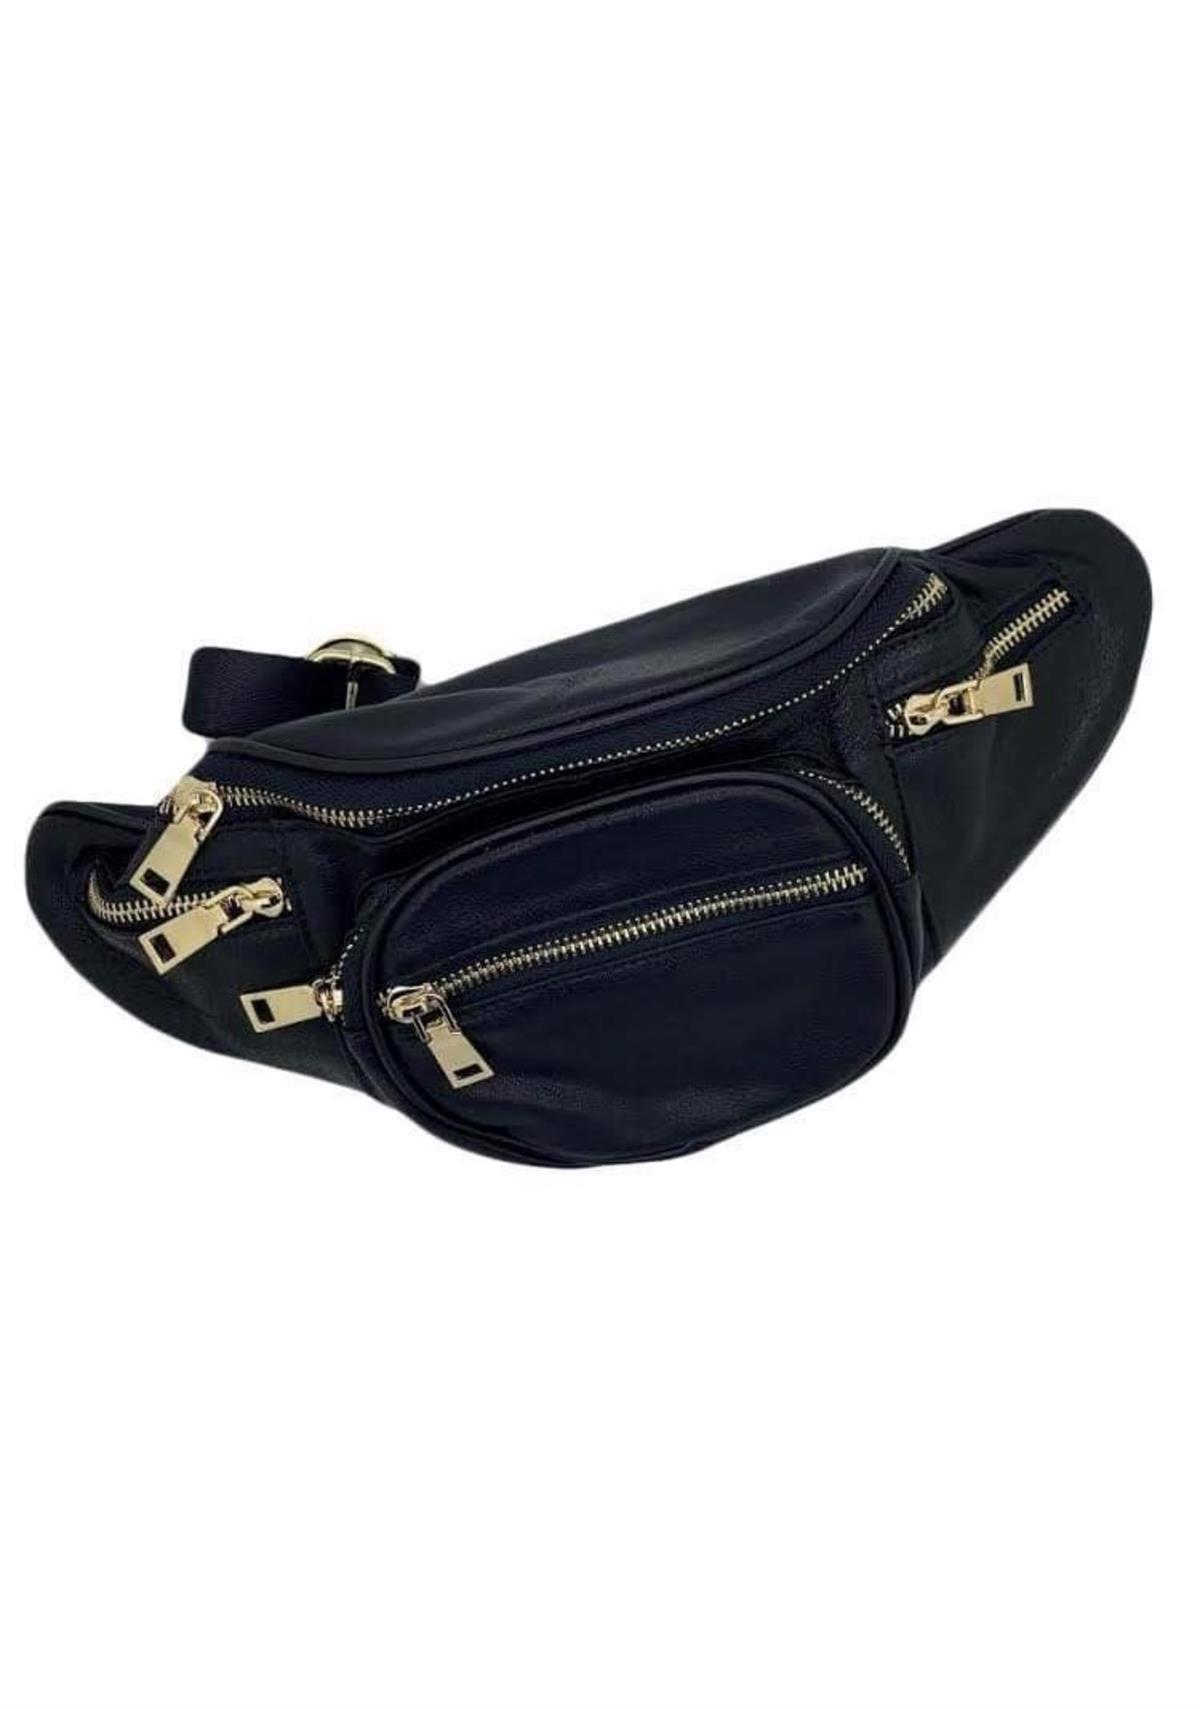 legetøj For nylig utilsigtet Just D ´Lux C2-0001 Belt Bag Leather Black with gold